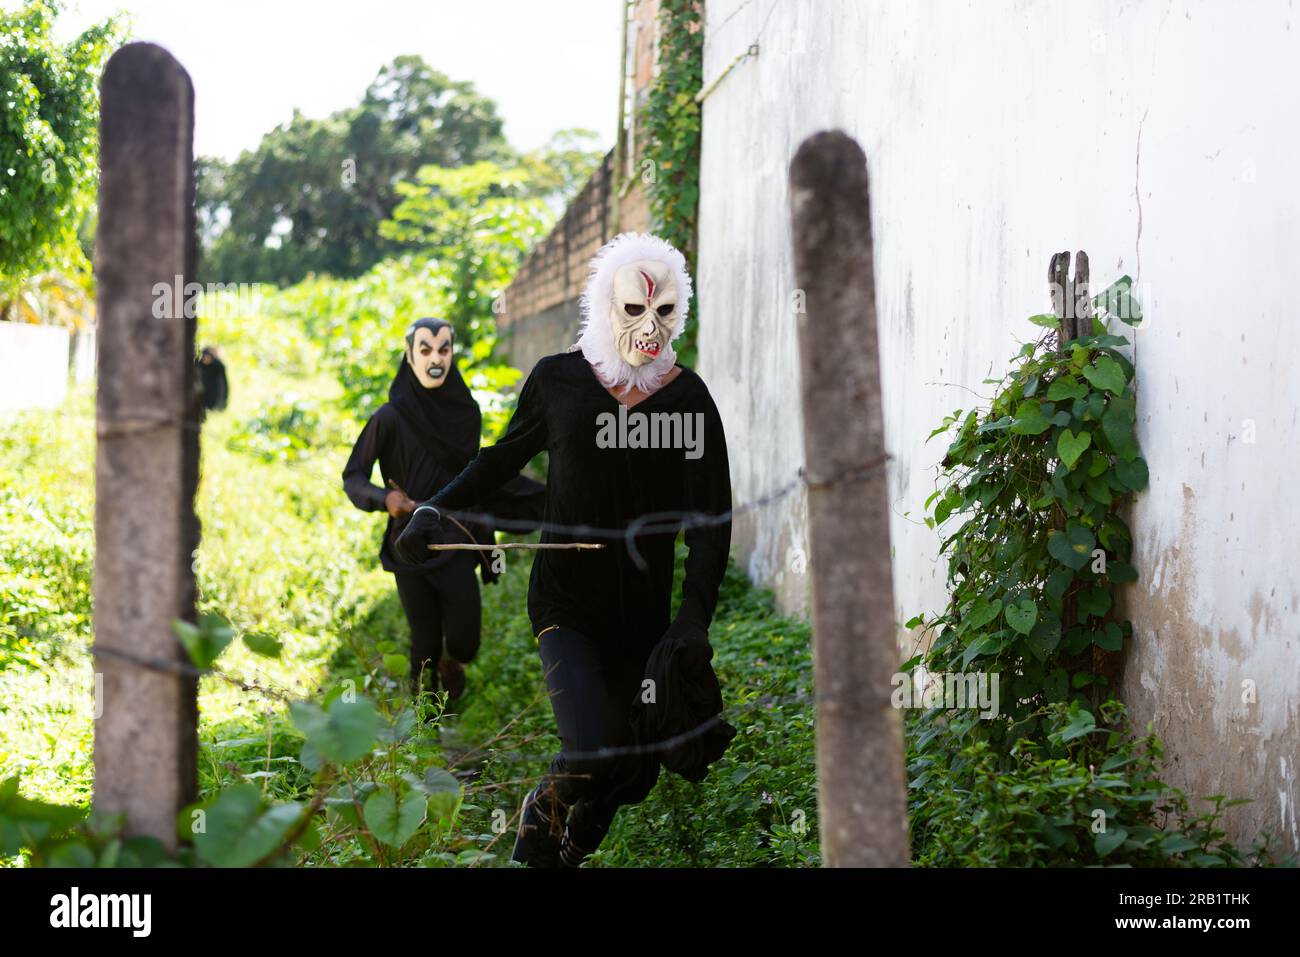 Santo Amaro, Bahia, Brasilien - 24. Juli 2022: Während einer kulturellen Demonstration in Acupe in den CI werden zwei Personen in Schwarz mit einer Terrormaske gesehen Stockfoto